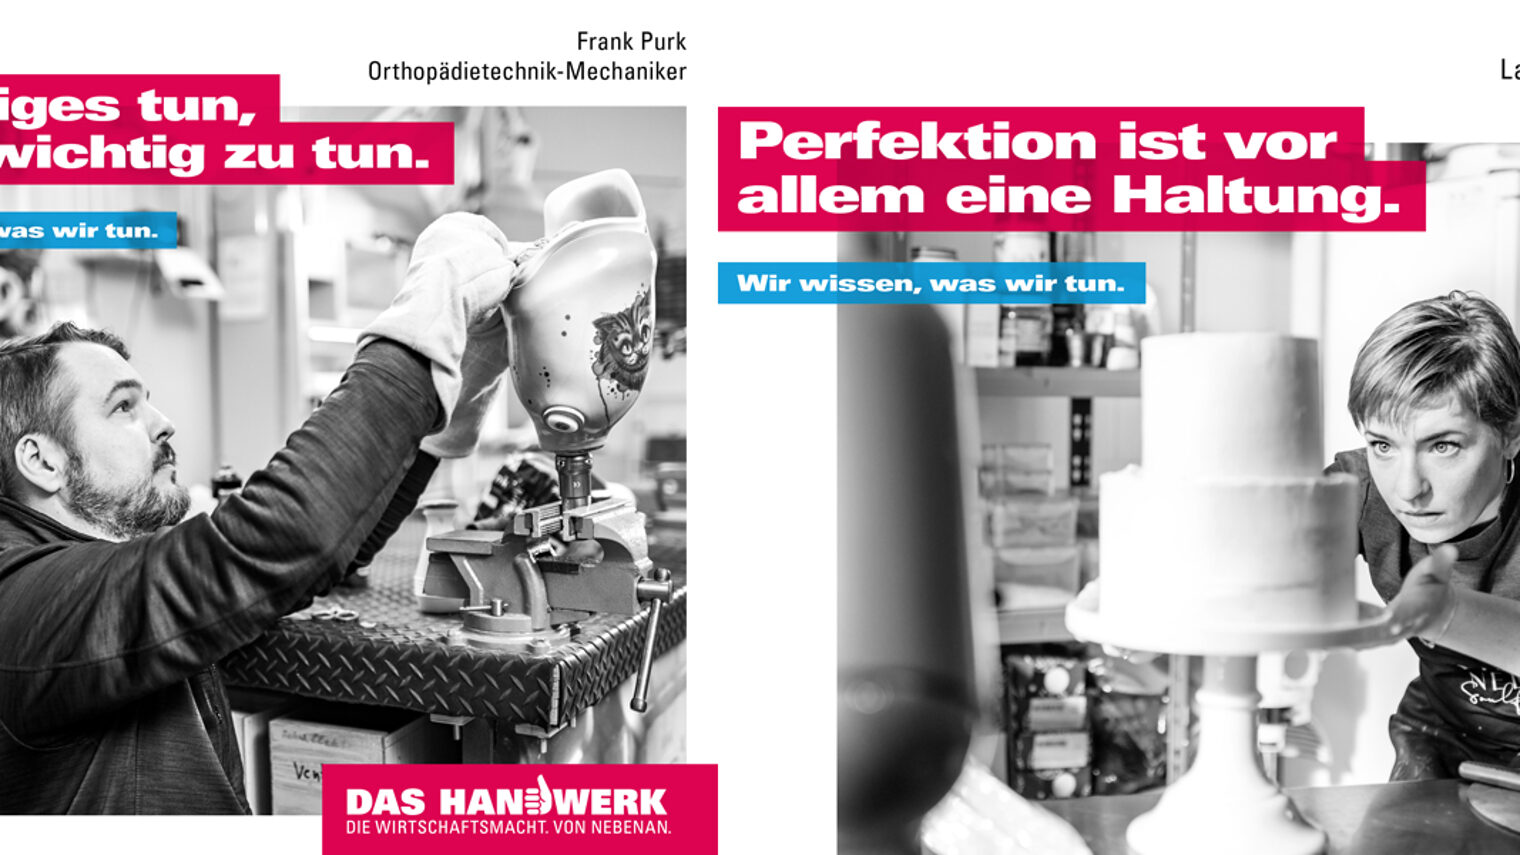 Zwei der vier neuen Motive der Imagekampagne des deutschen Handwerks